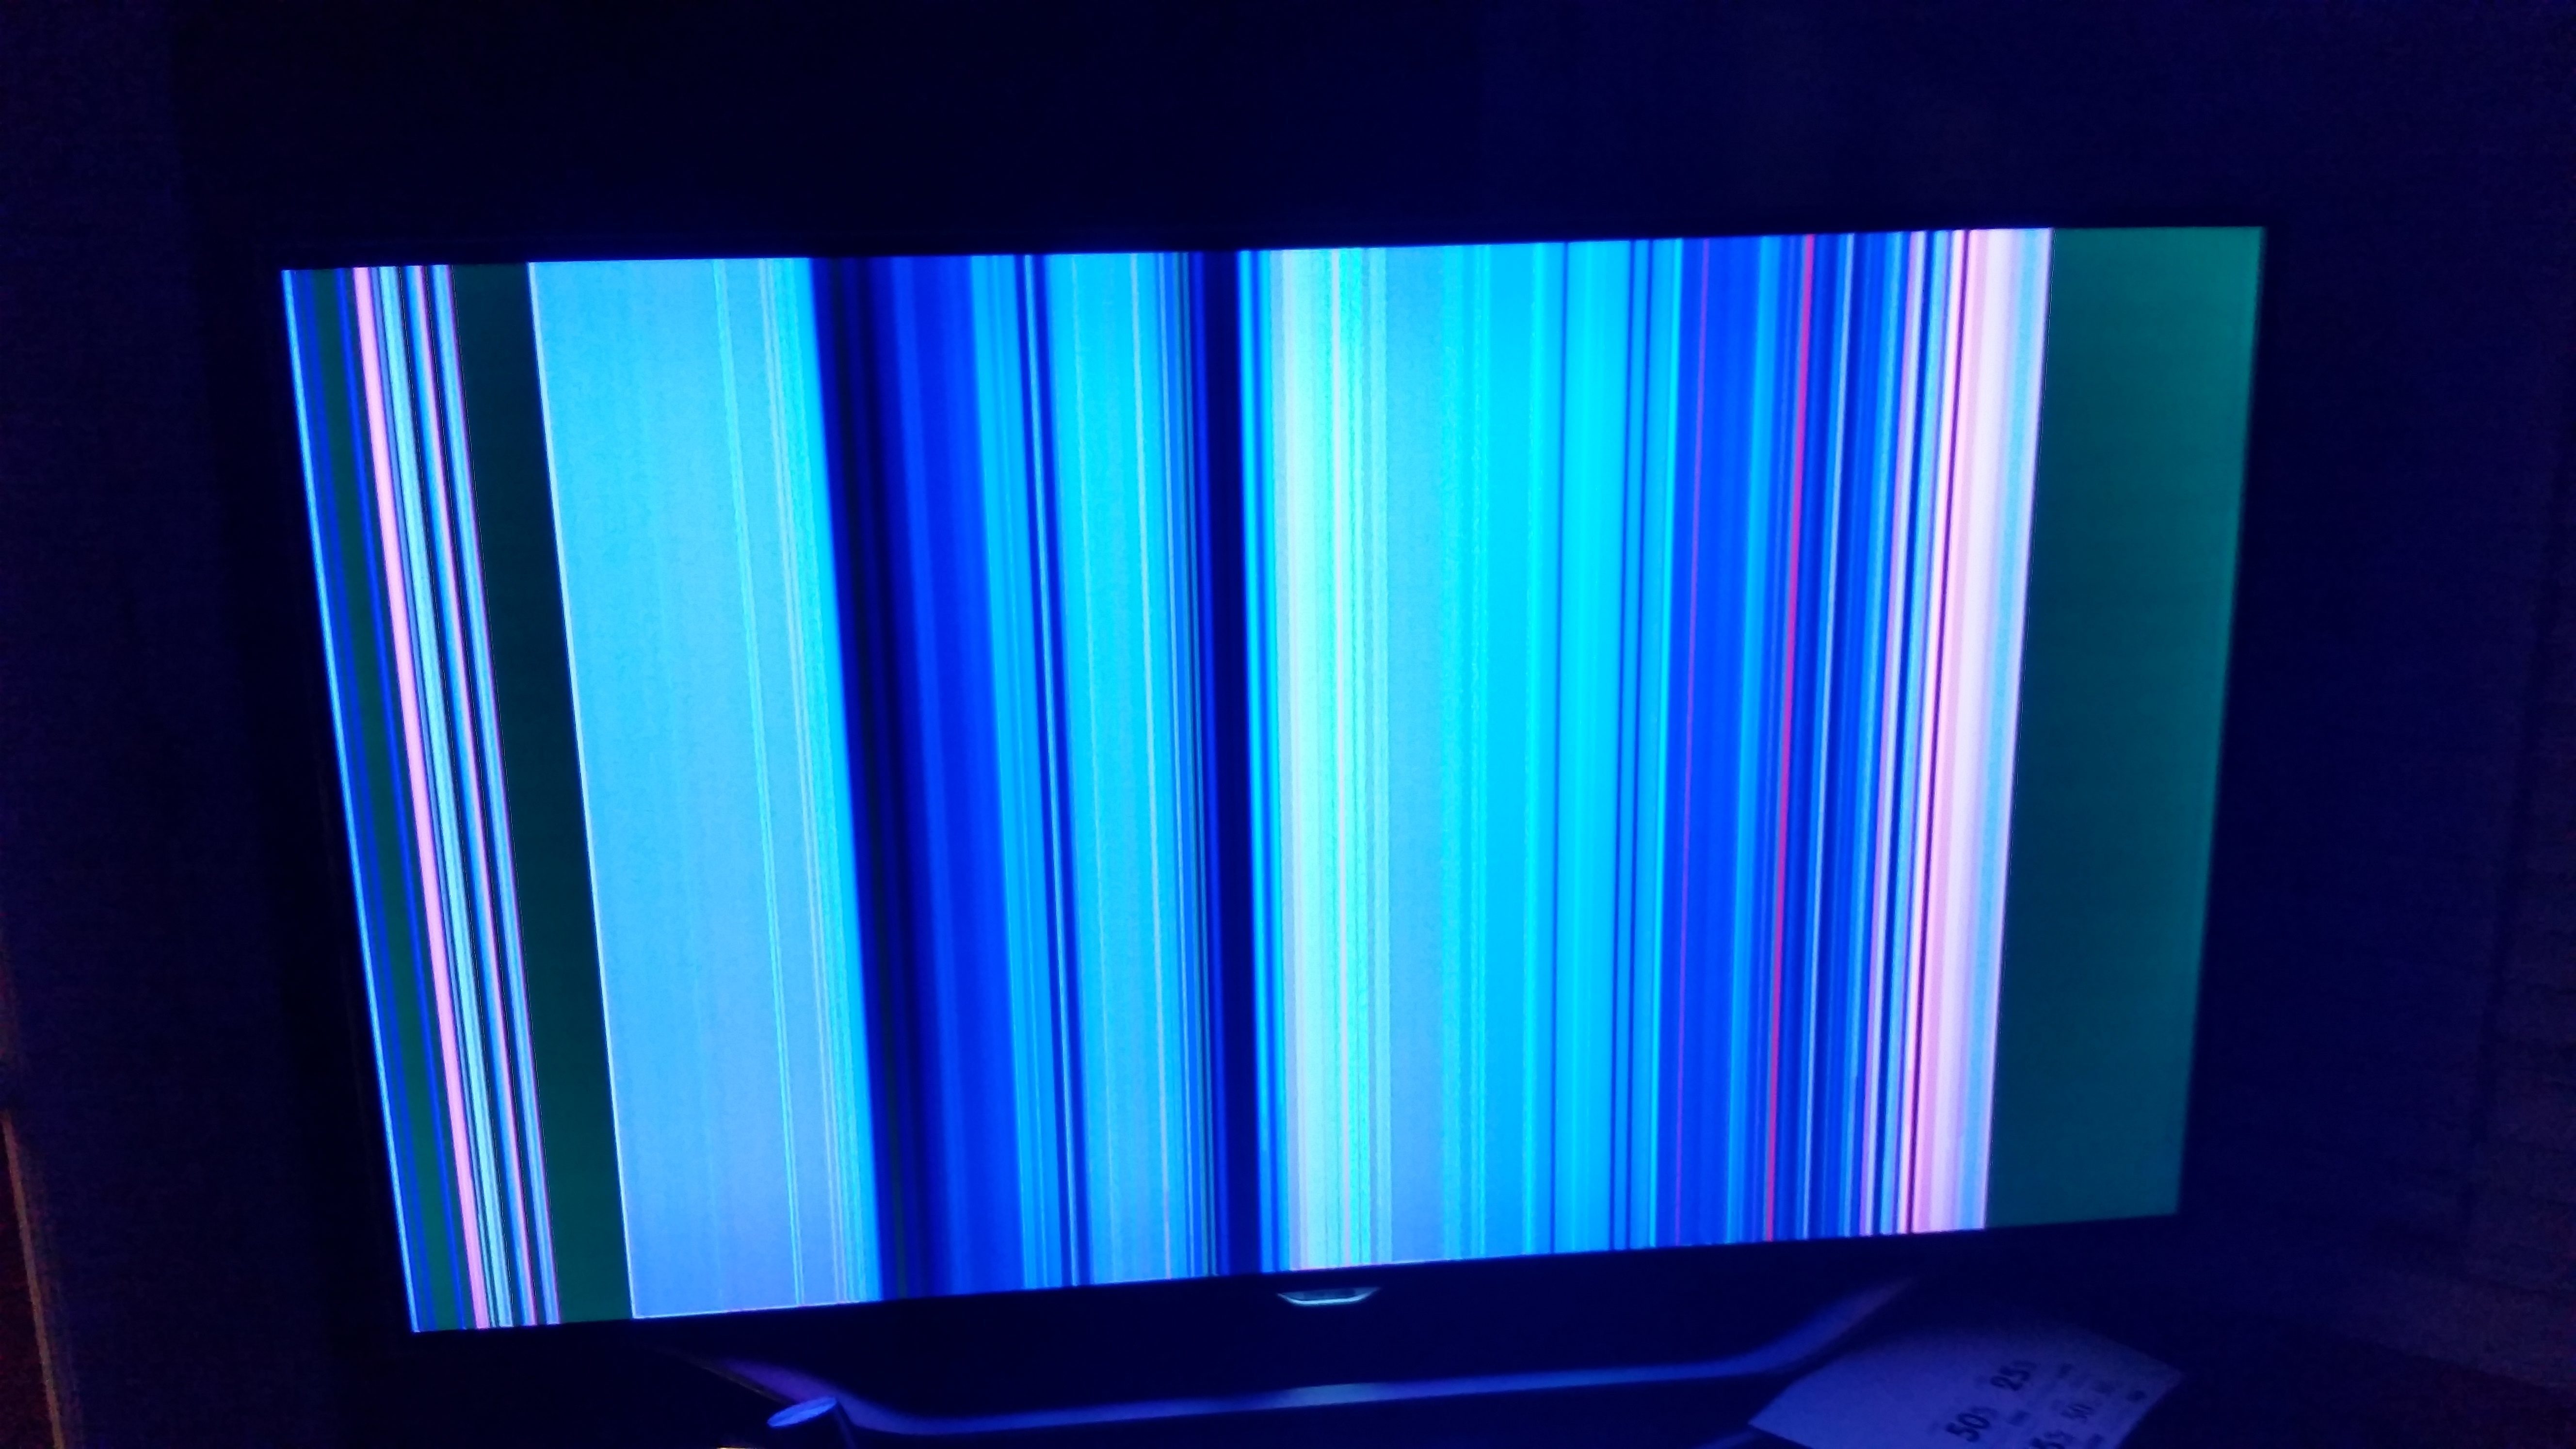 Полоска на мониторе. Телевизор Филипс горизонтальные полосы на экране. Вертикальные полосы на телевизоре. Экран телевизора. Полосымеа экране телевизора.